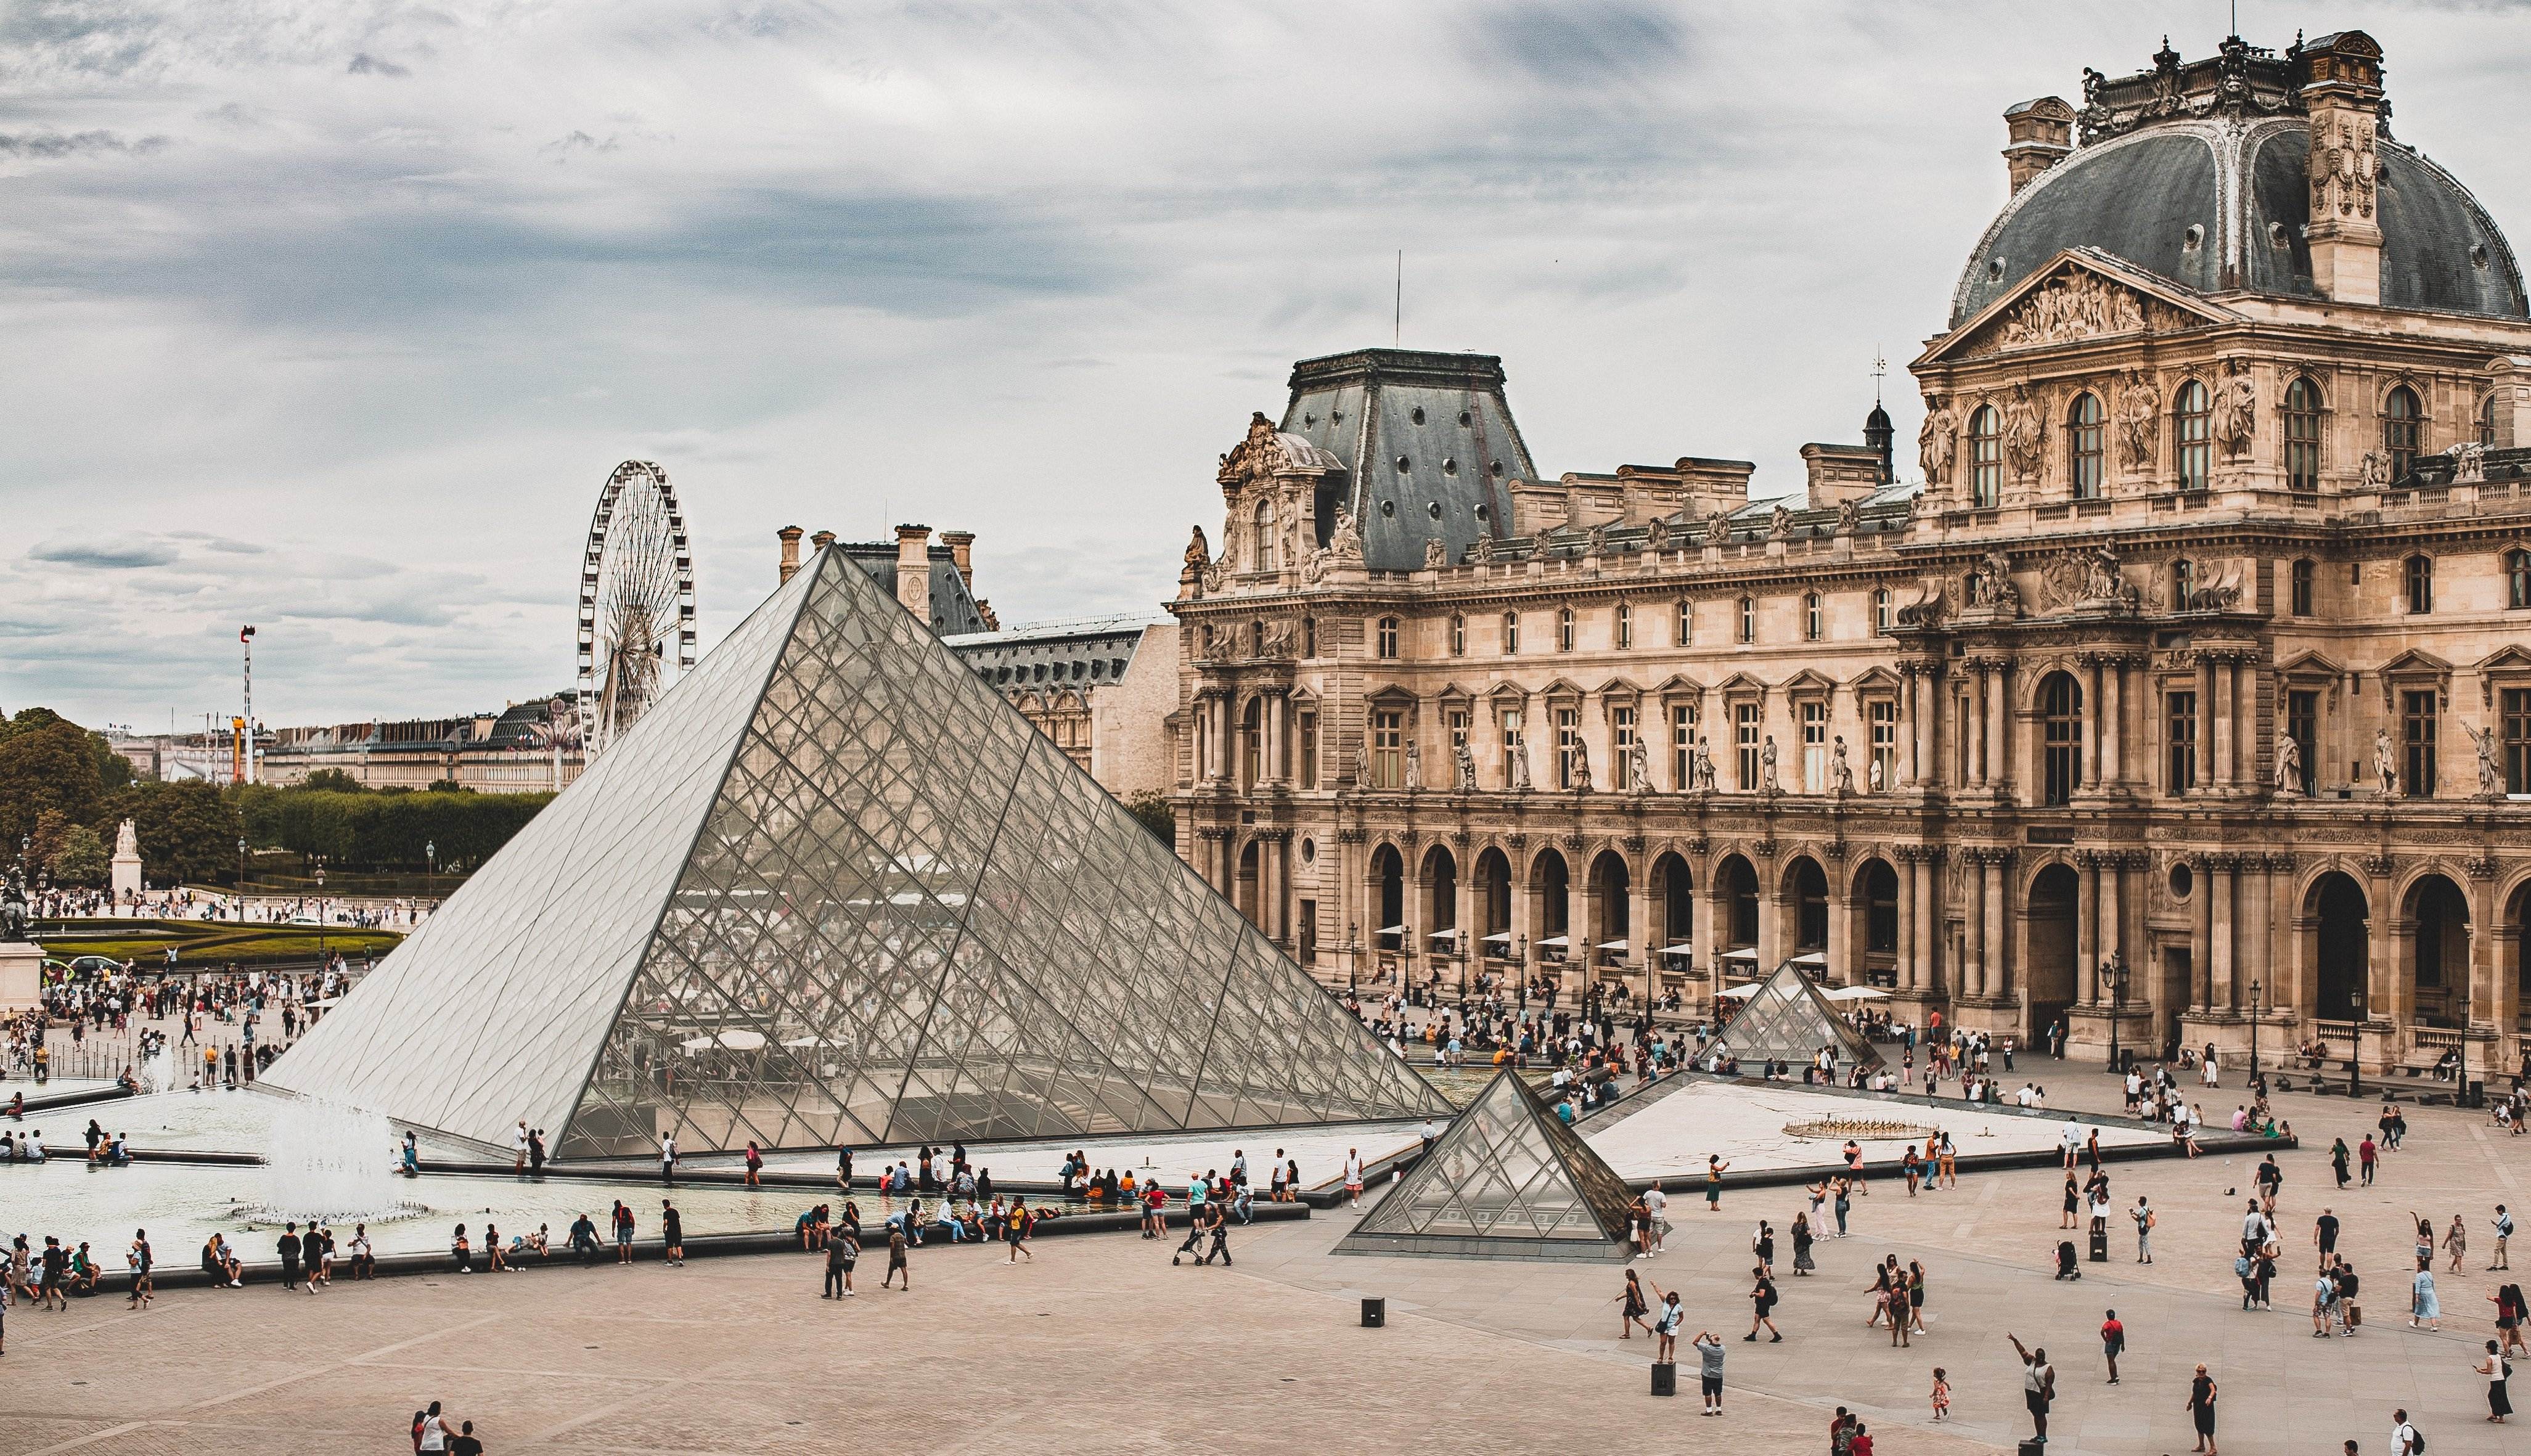 Desalojan el museo del Louvre por una amenaza de bomba